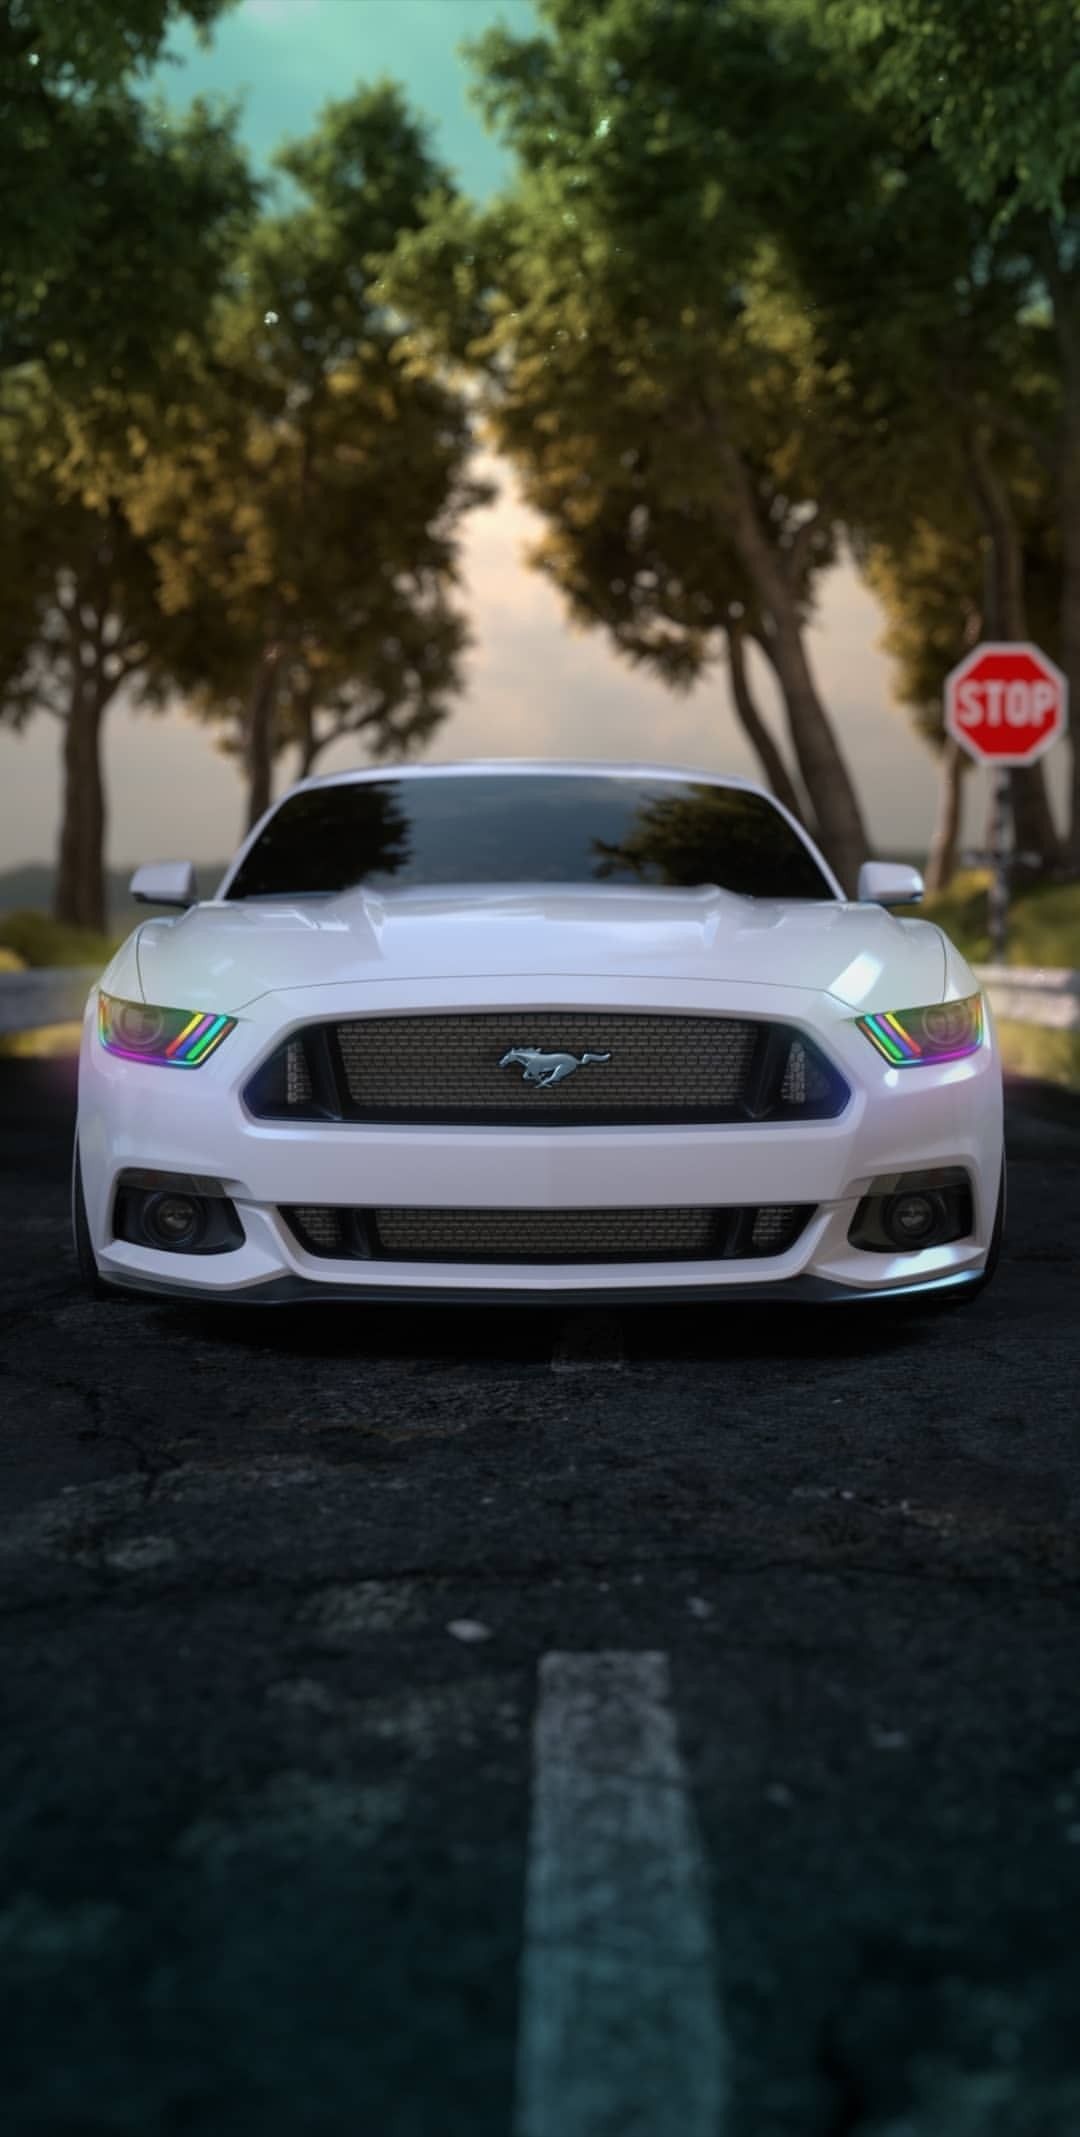  Ford Hintergrundbild 1080x2137. Wallpaper. Ford mustang wallpaper, Ford mustang, Mustang wallpaper